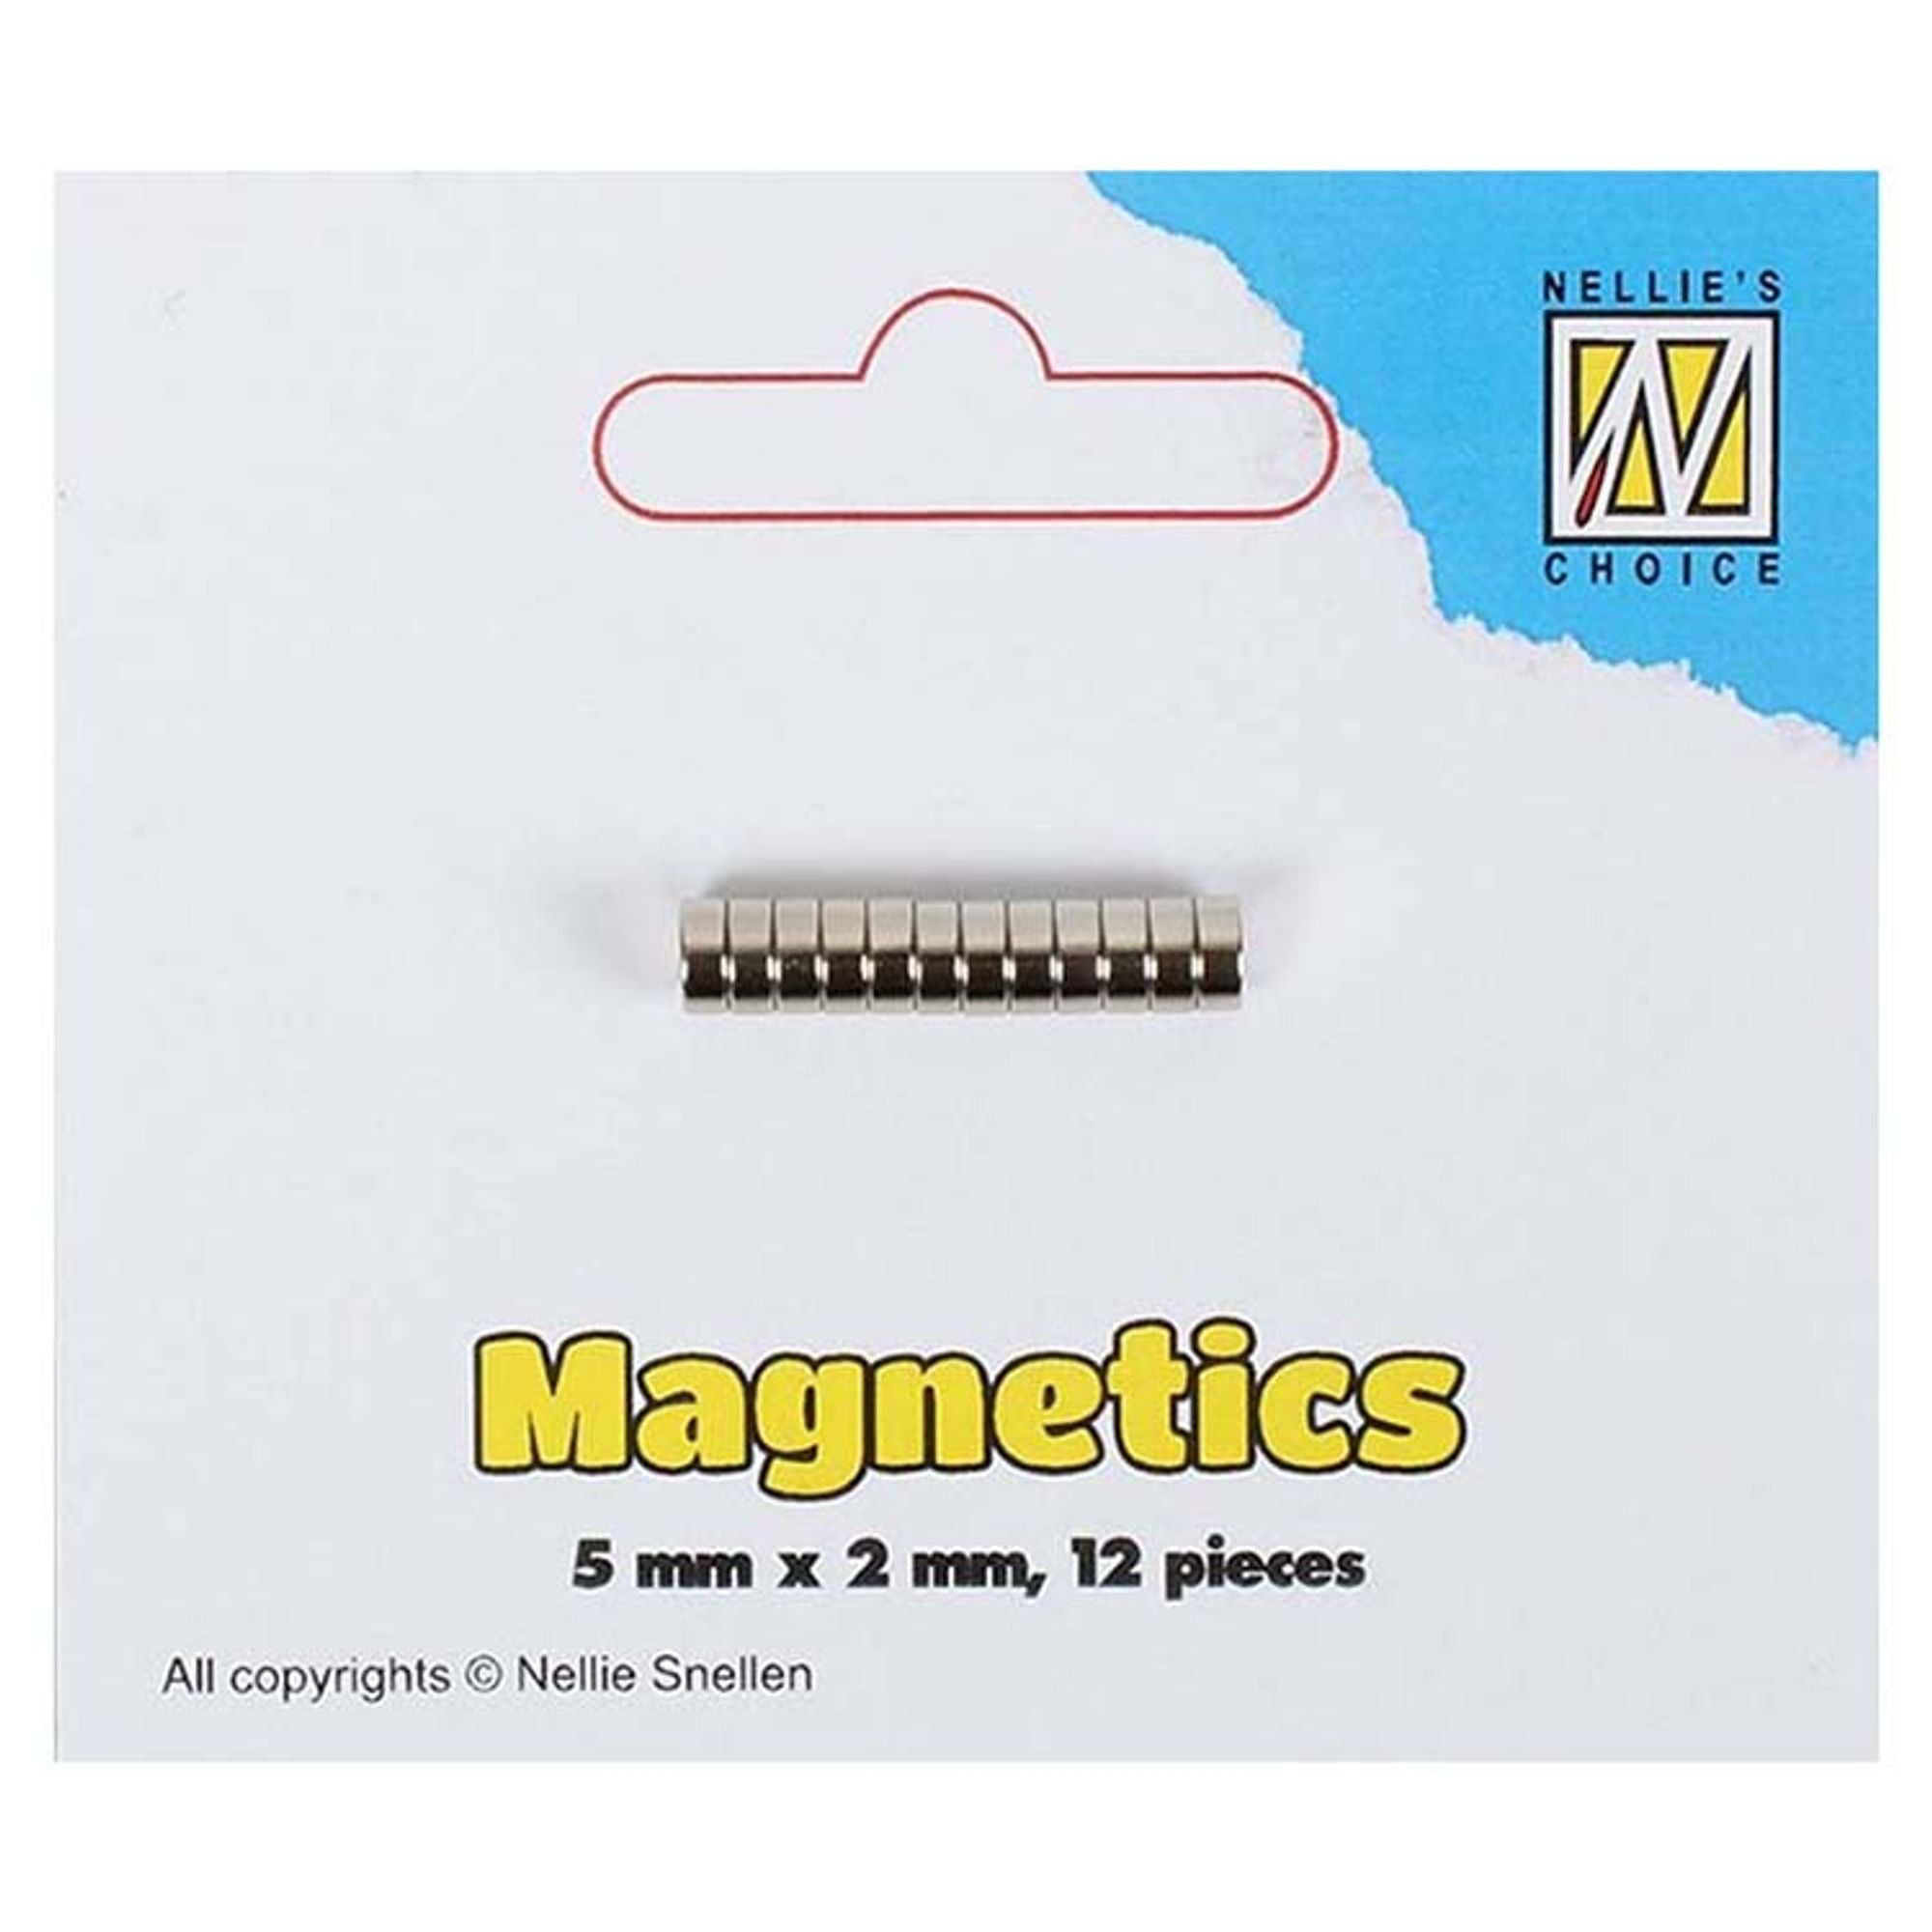 Nellie's Choice Magnetics 5mm x 2mm 12 pcs